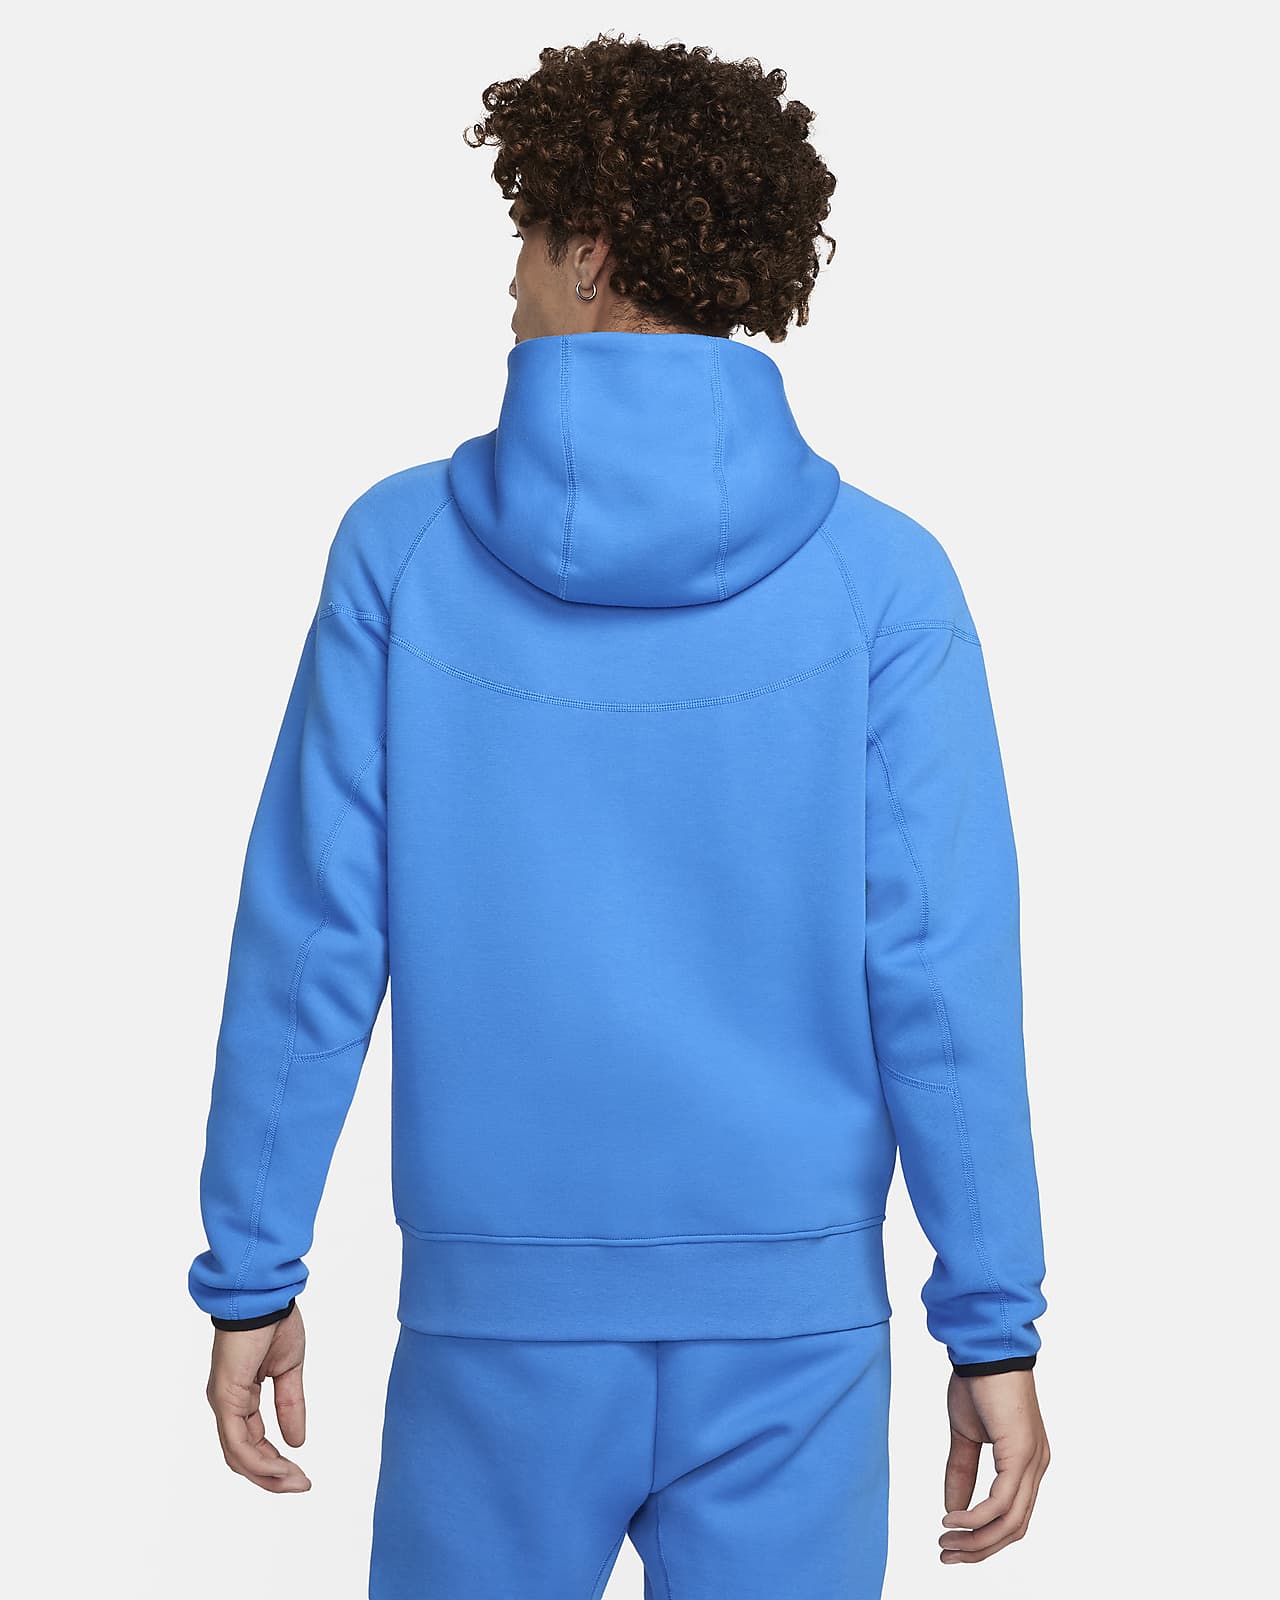 Sweat zippé à capuche Nike Tech Fleece Windrunner Beige & Blanc pour Homme